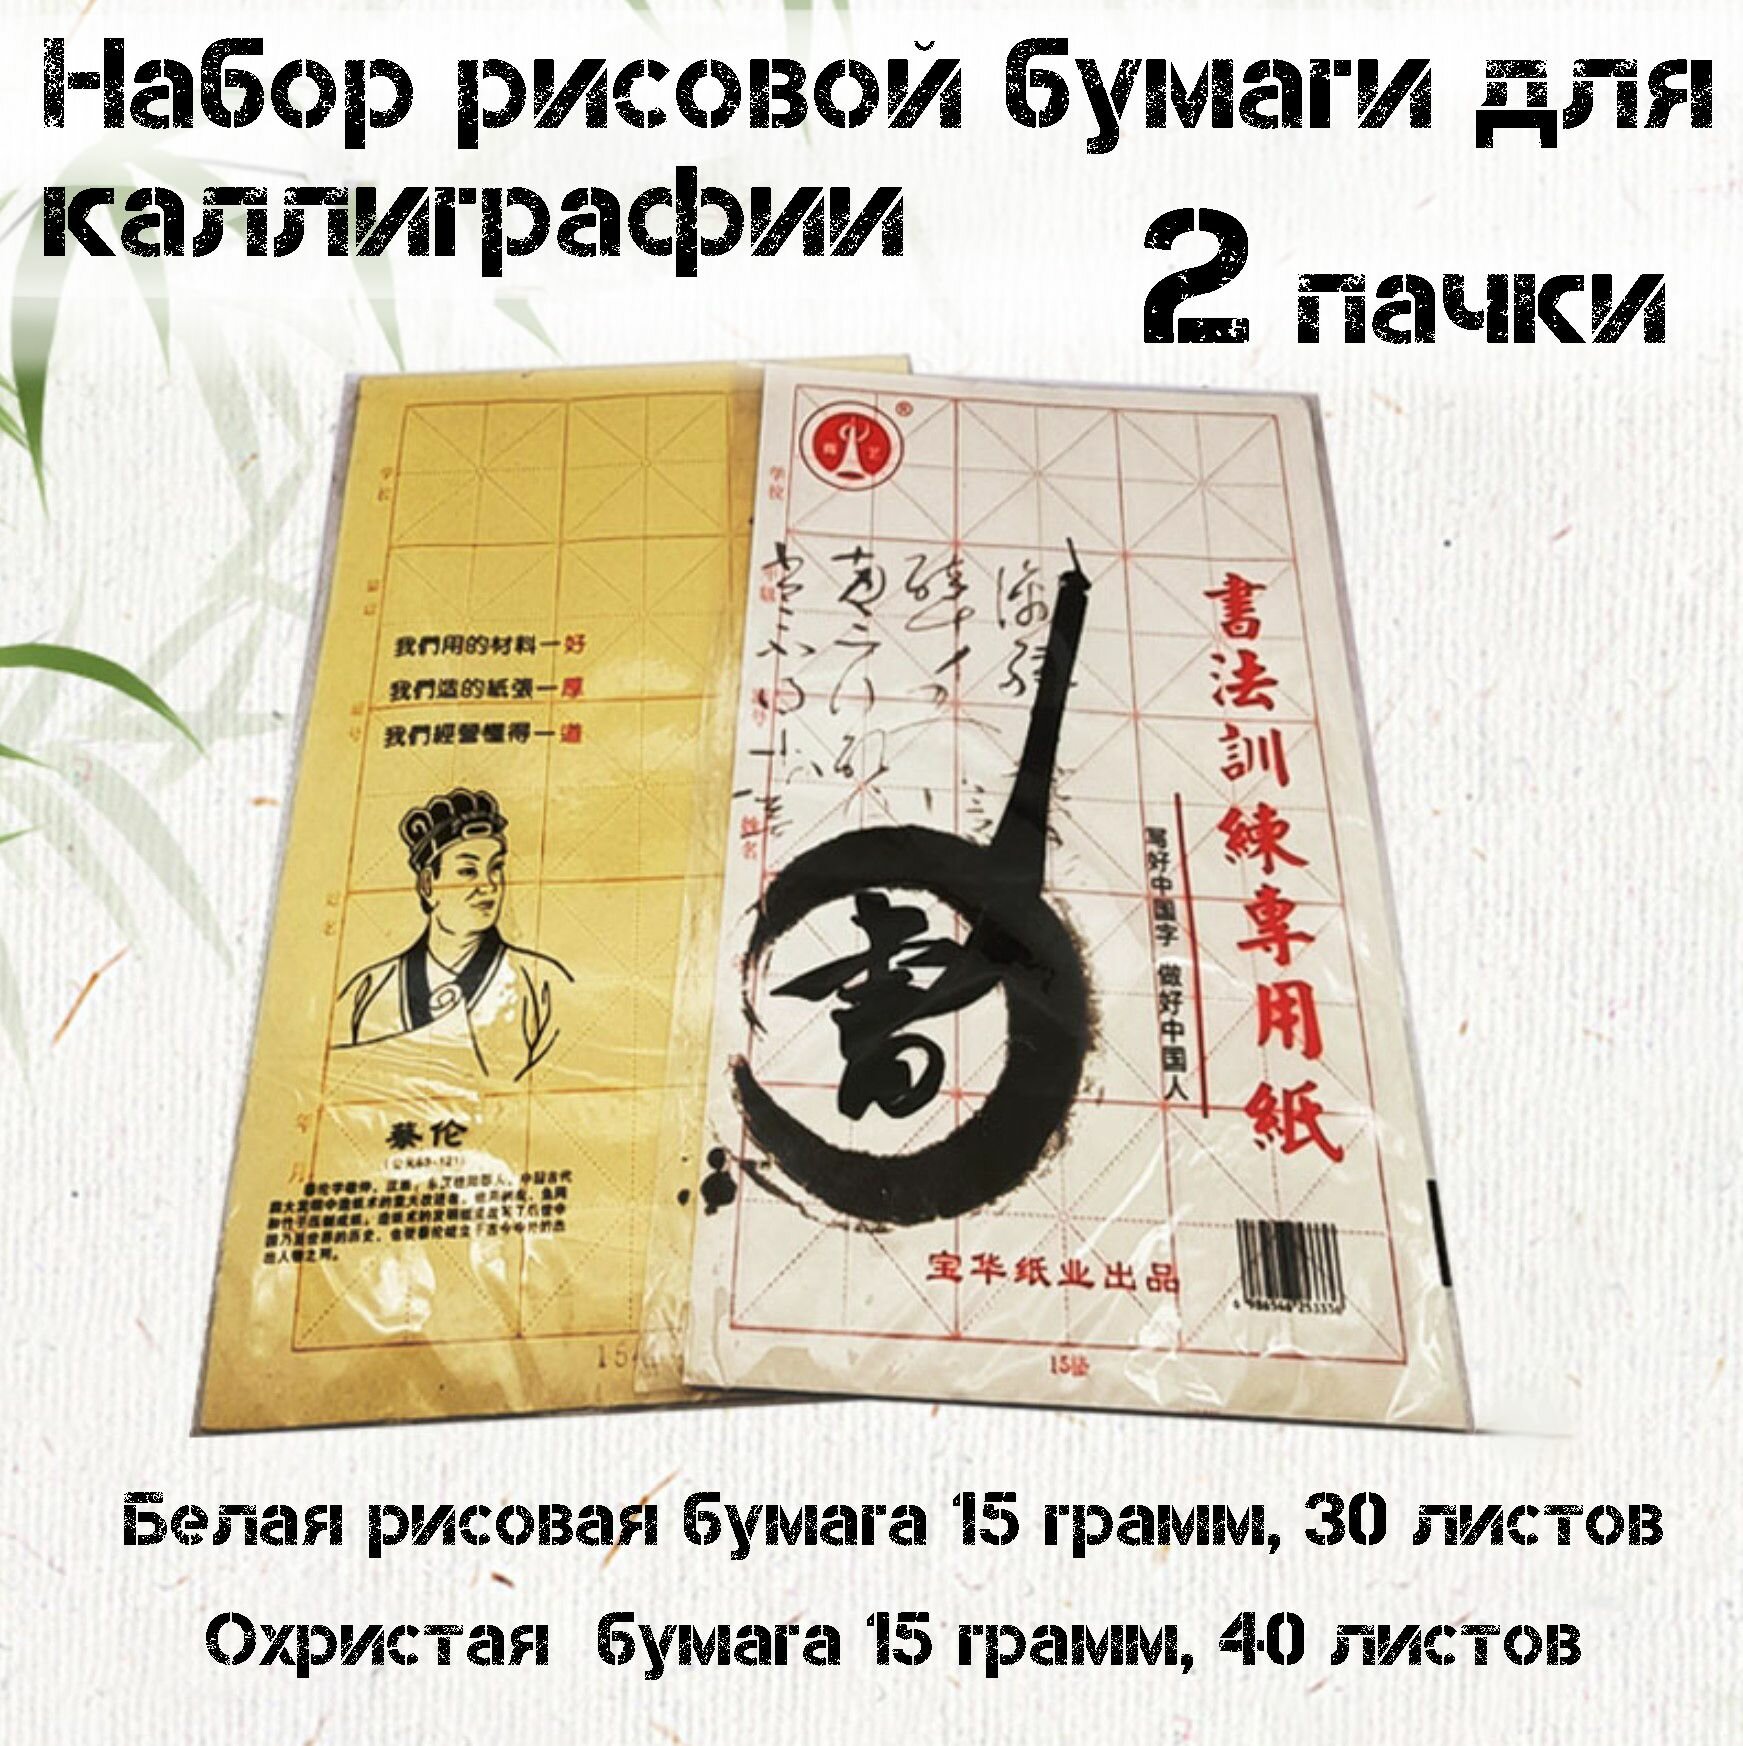 Рисовая бумага 2 пачки для каллиграфии и рисования обучению китайскому письму